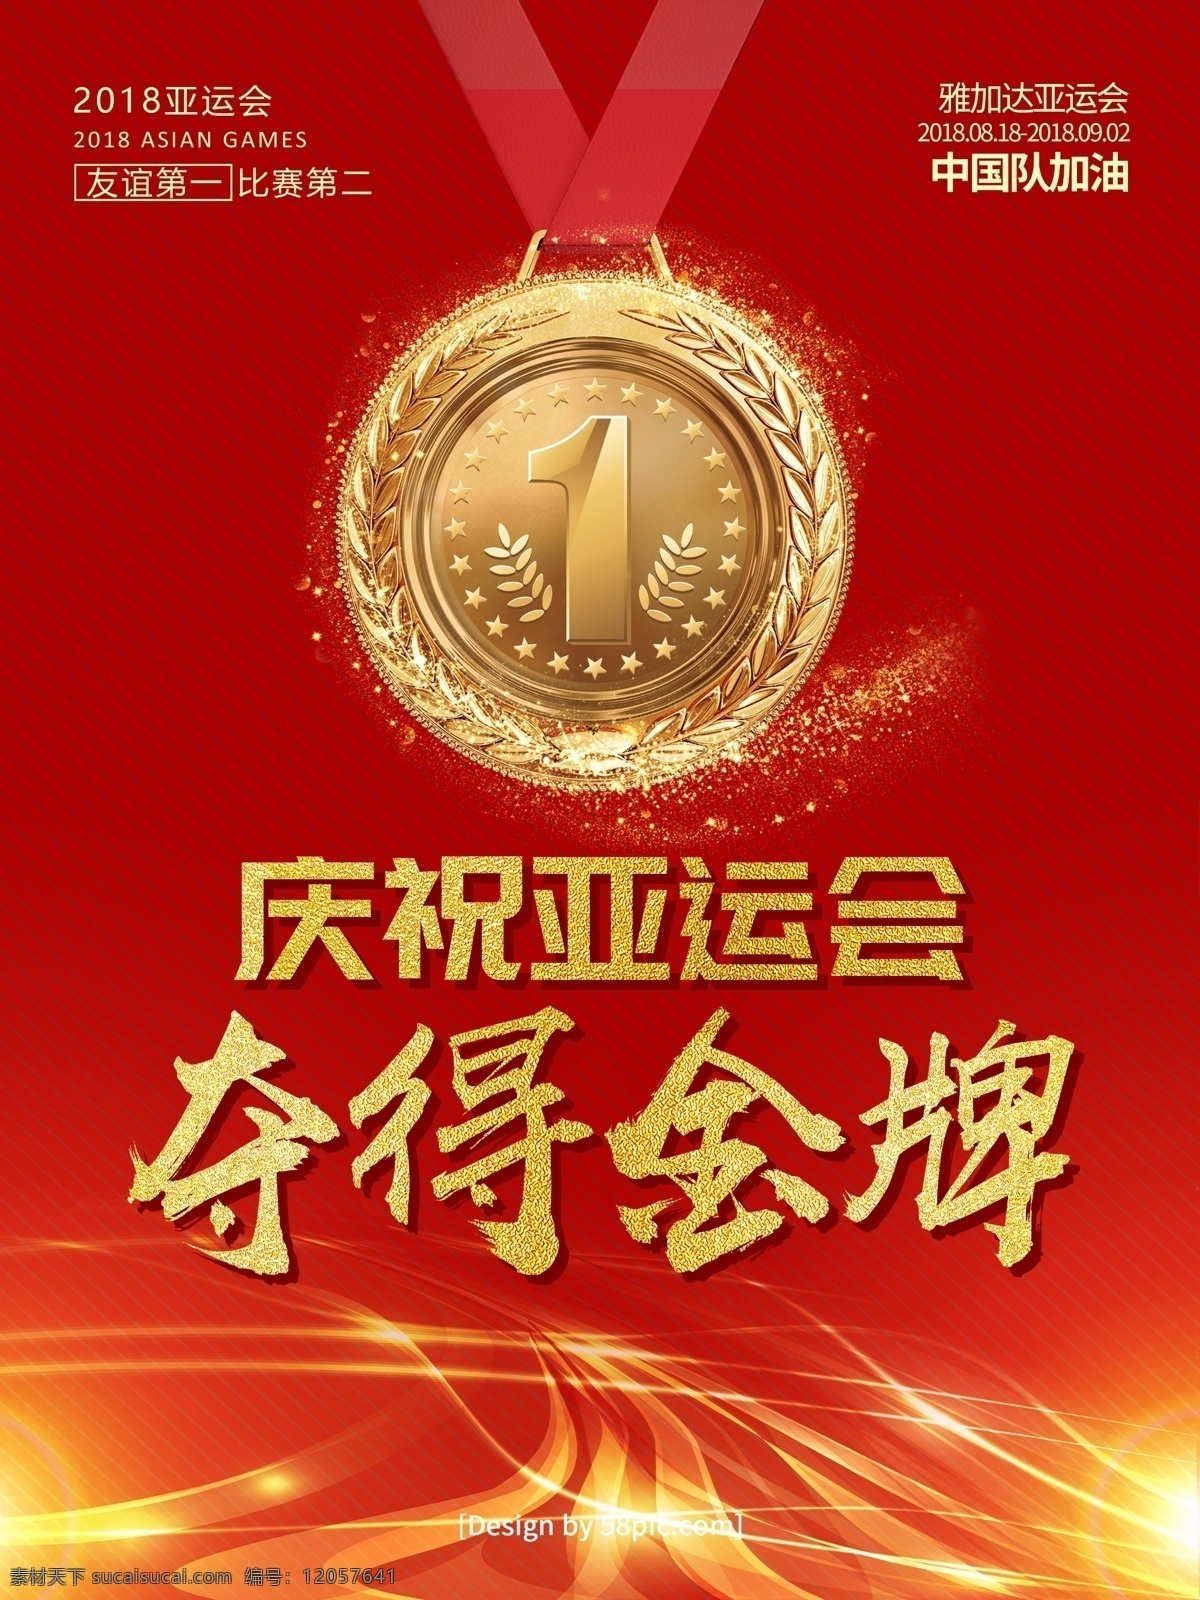 红色 喜庆 金字 庆祝 亚运会 夺得 金牌 海报 2018 大气 雅加达亚运会